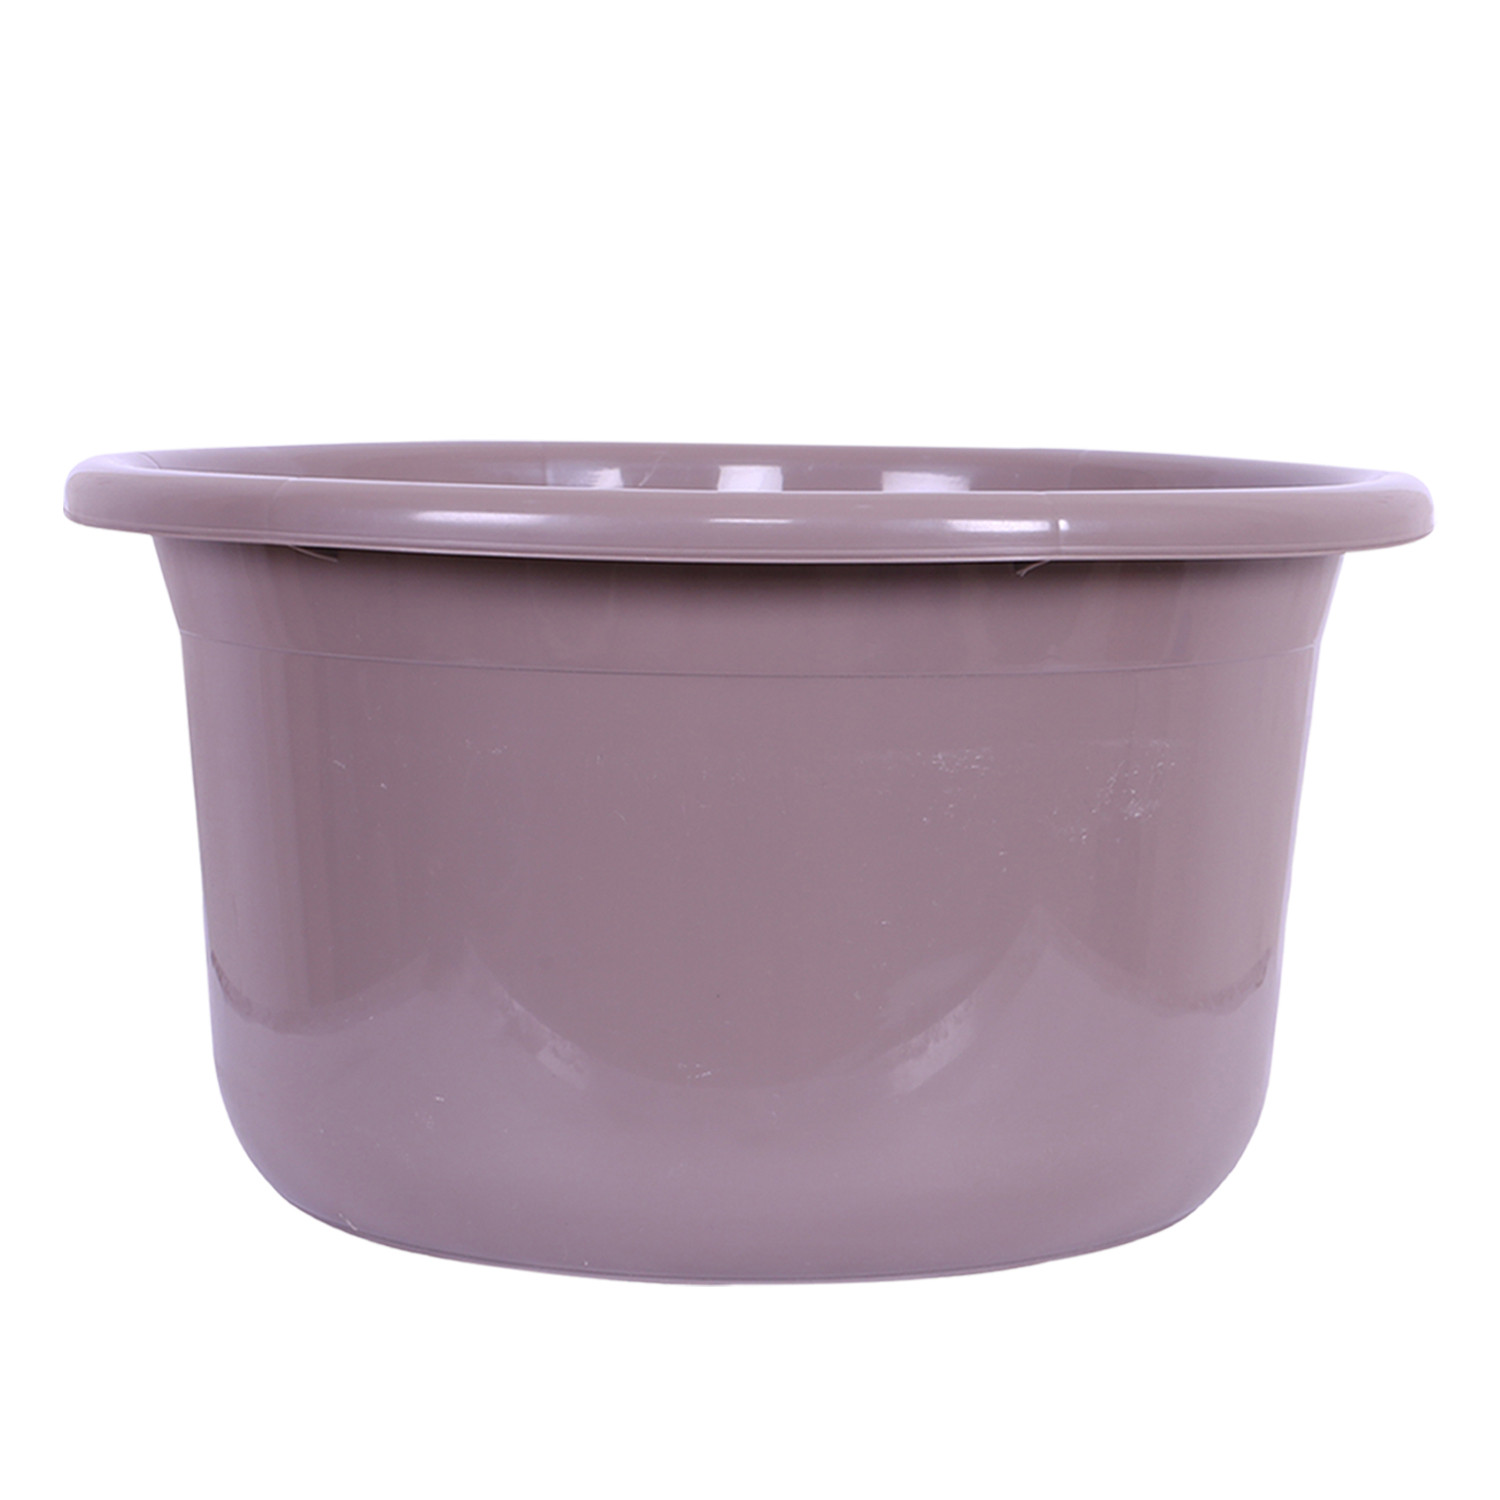 Kuber Industries Bath Tub | Versatile Utility Gaint Tub | Plastic Bath Tub for Baby | Baby Bathing Tub | Clothes Washing Tub For Bathroom | Feeding Pan Tub | TUB-25 LTR | Brown